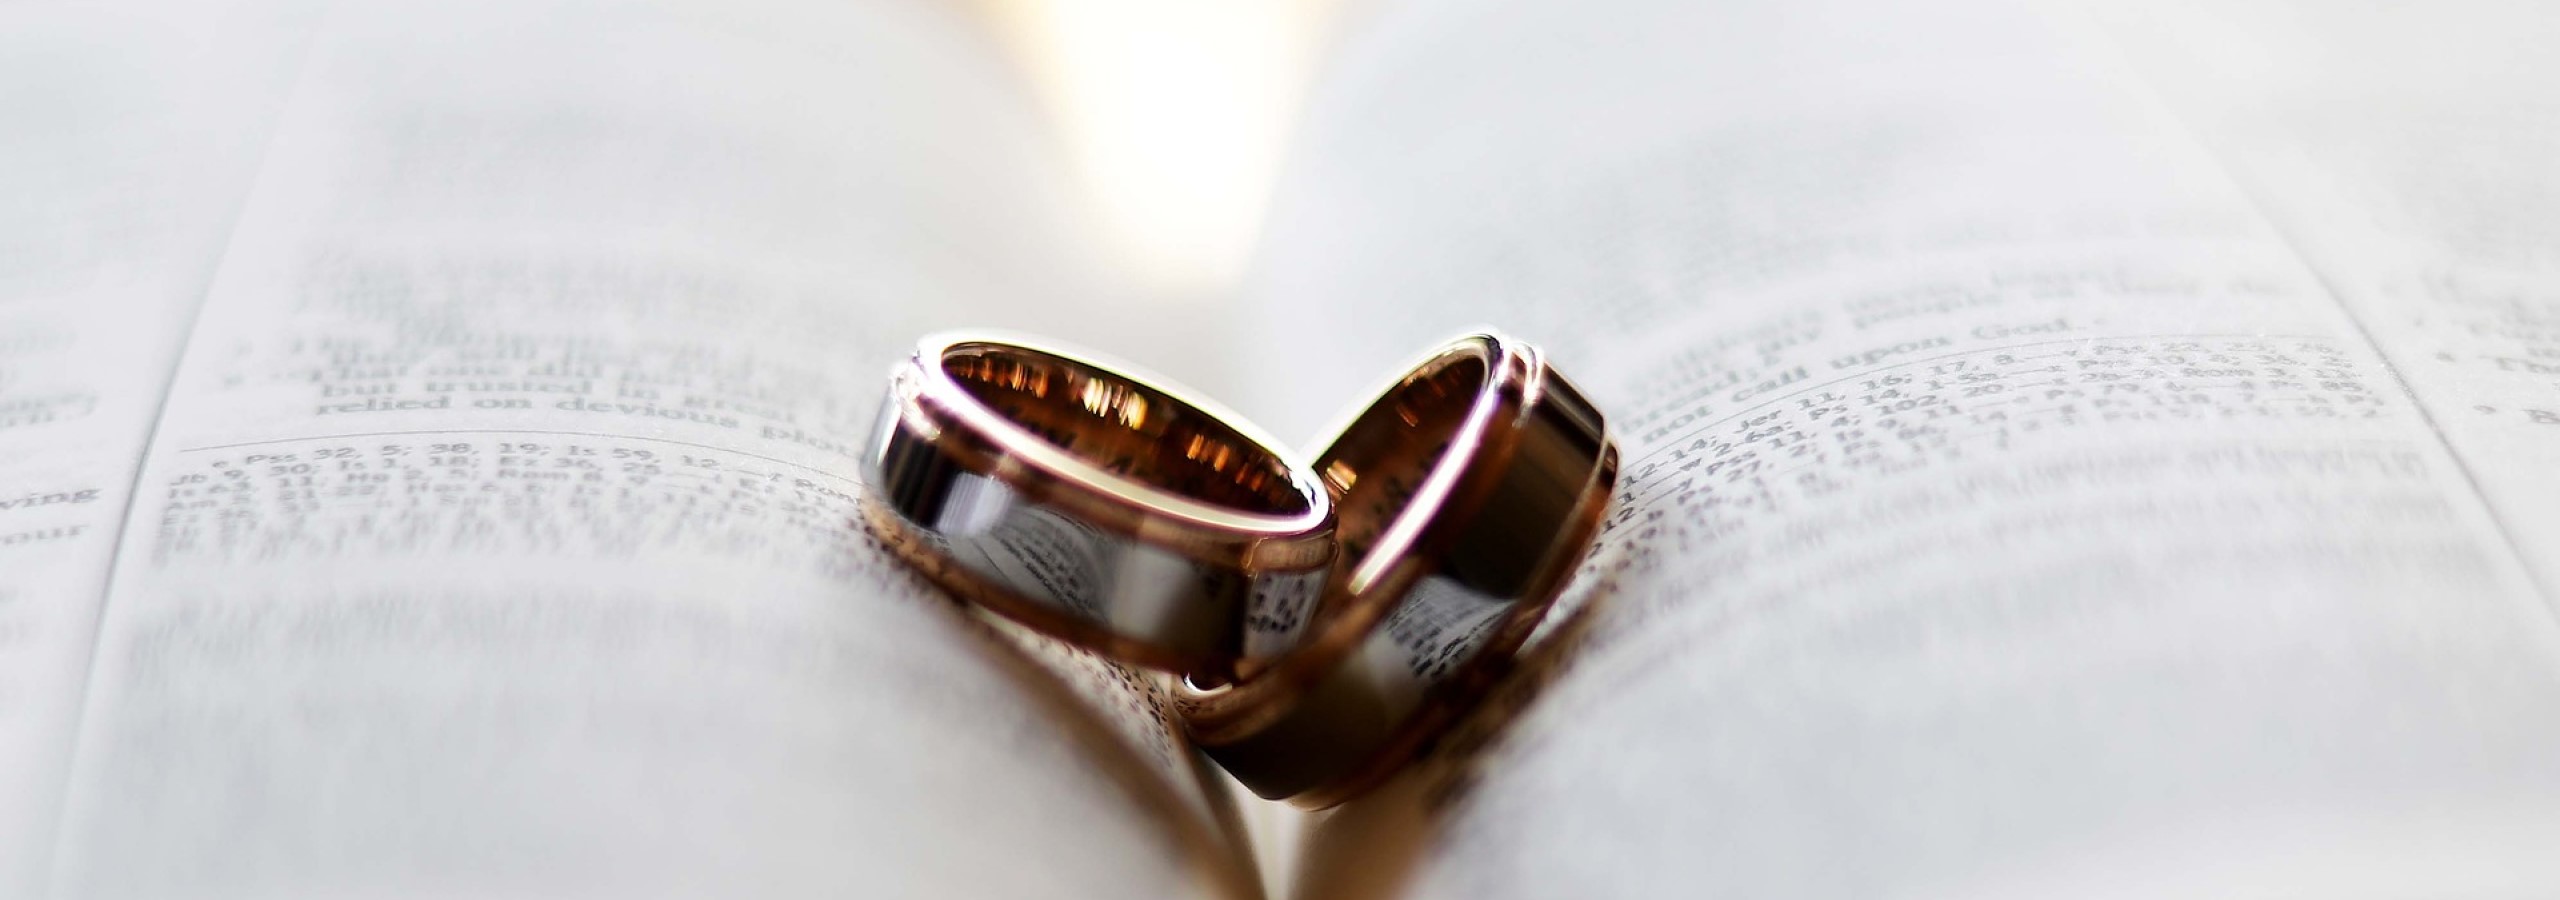 Panoramaschnitt von 2 Trauringen in einer Buchfalte für das Thema Eheschließungen